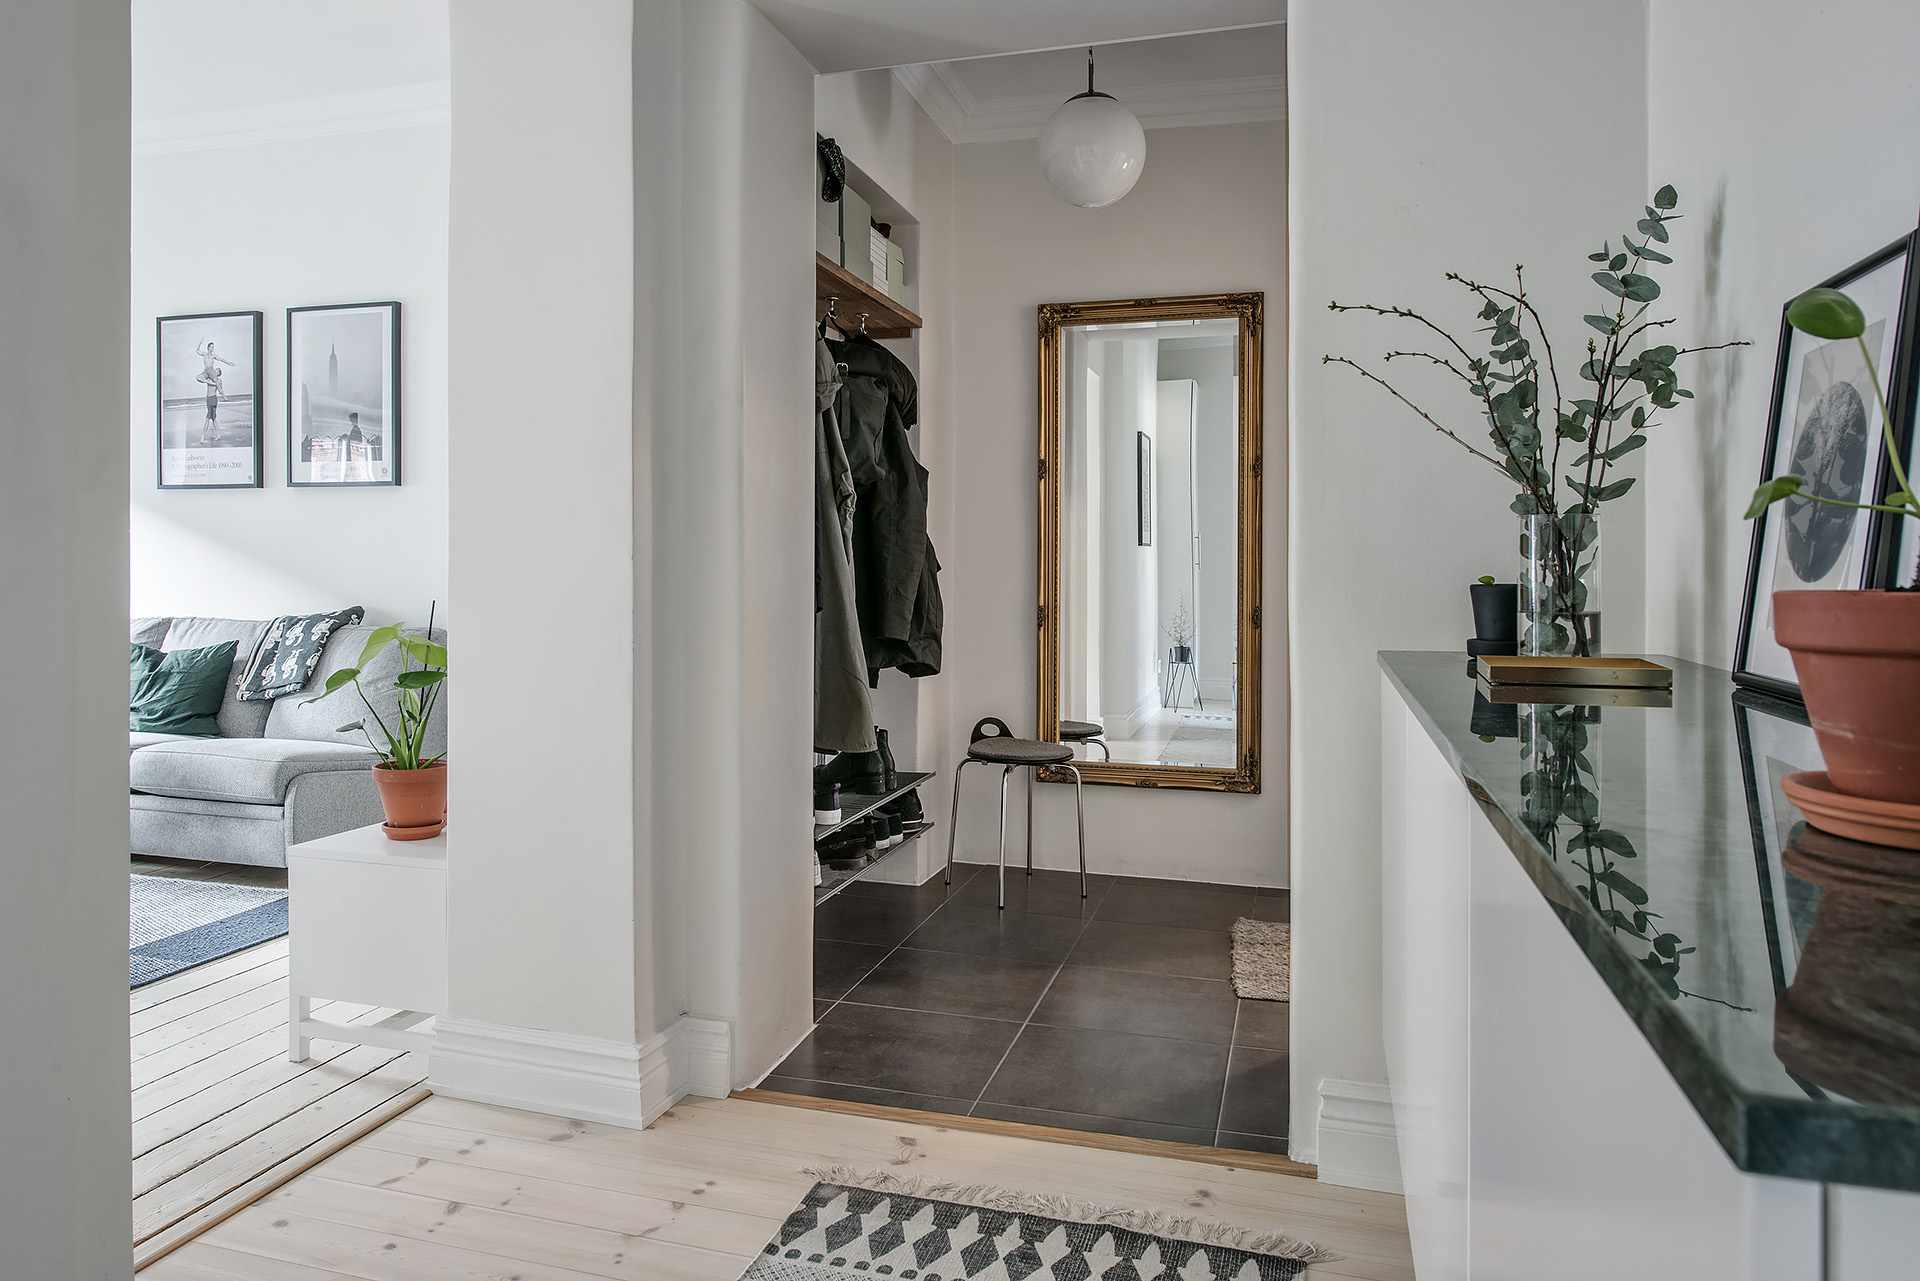 Un couloir d'appartement - choisissez le style nordique minimaliste